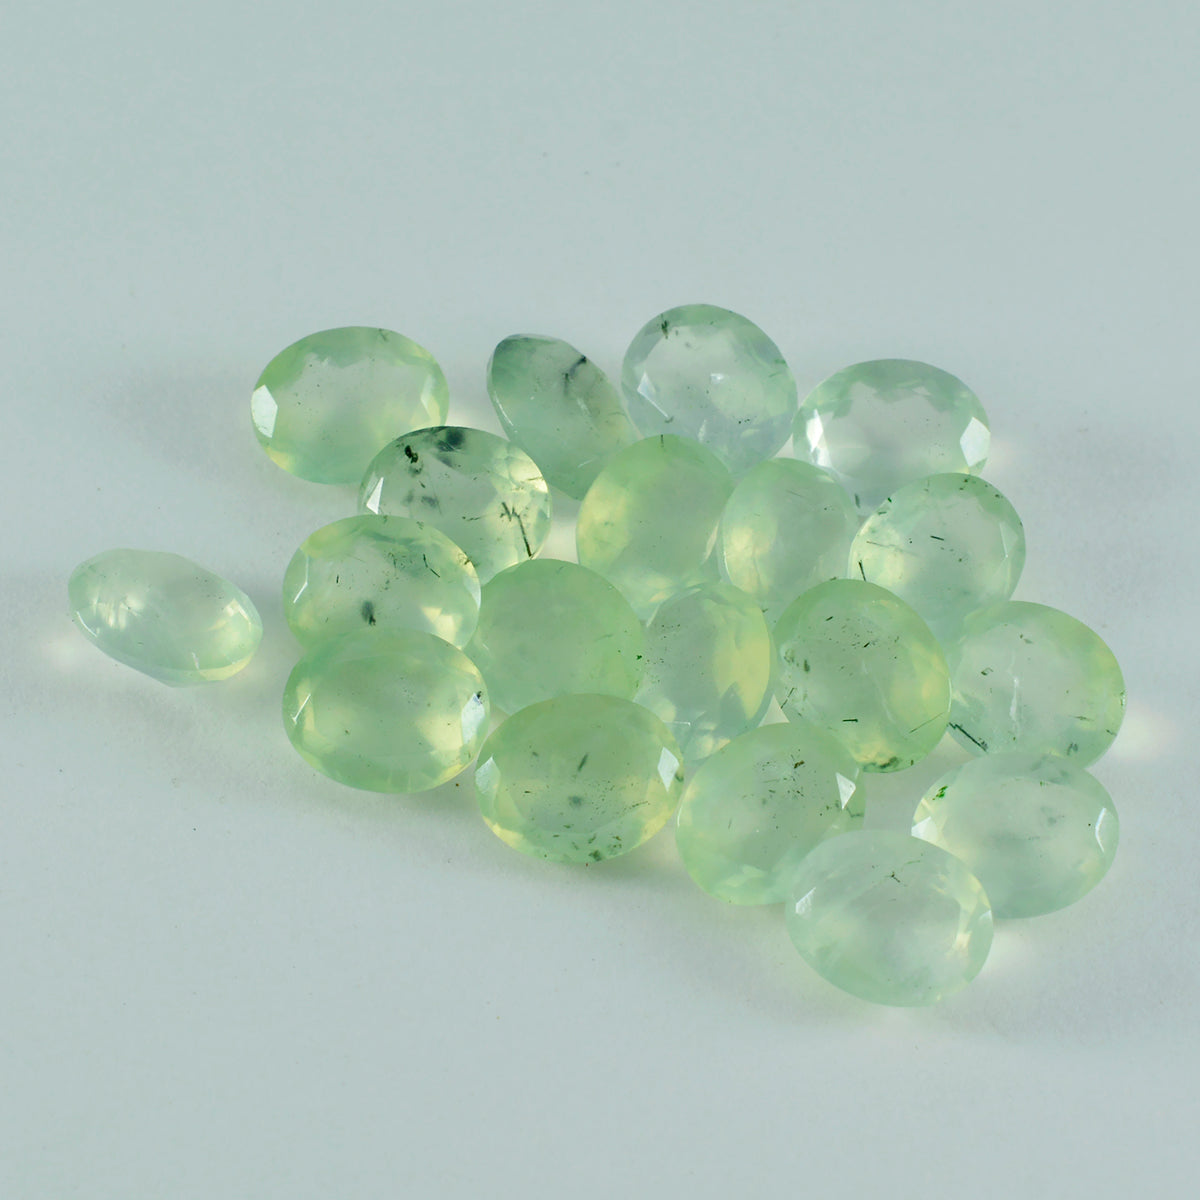 riyogems 1шт зеленый пренит ограненный 6x8 мм овальная форма довольно качественный сыпучий драгоценный камень